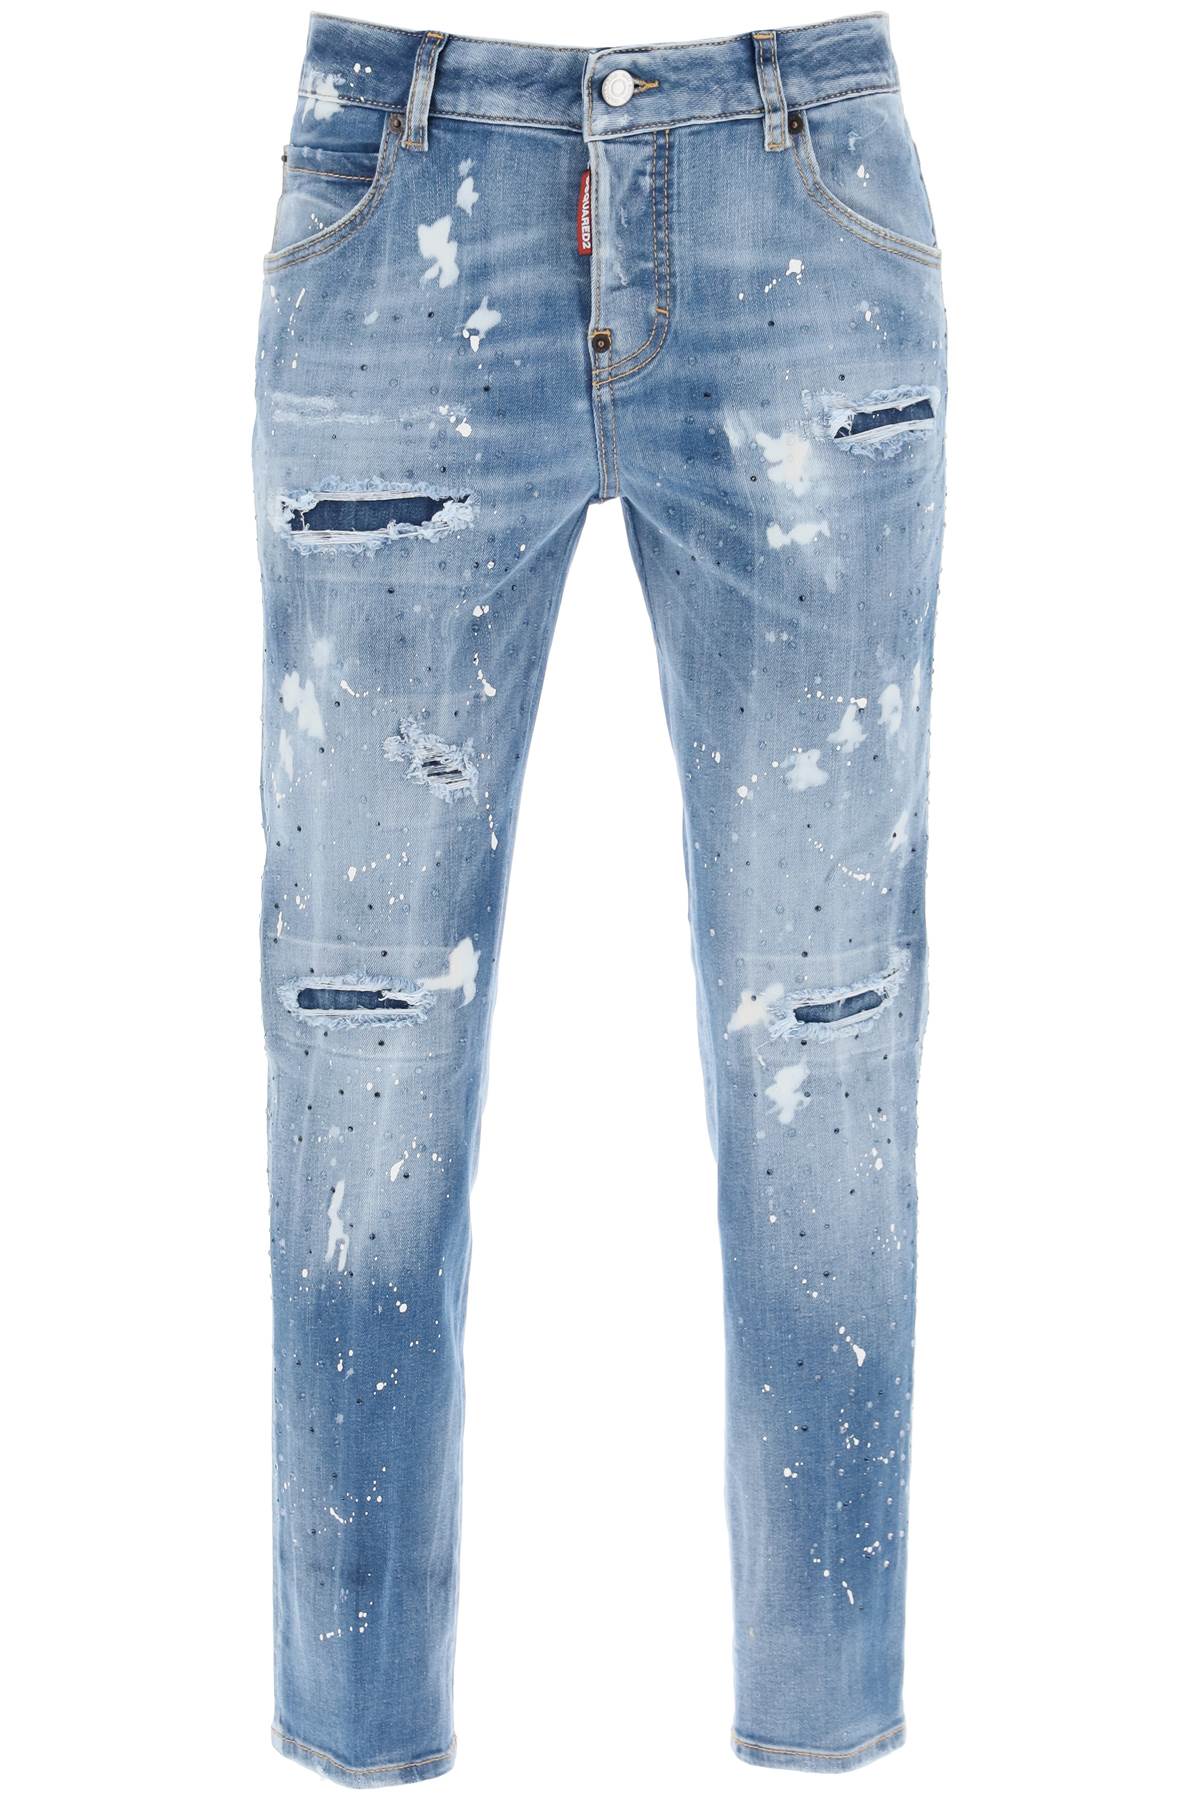 Quần Jeans Denim Cool Girl Medium Ice Spots dành cho phụ nữ - SS24